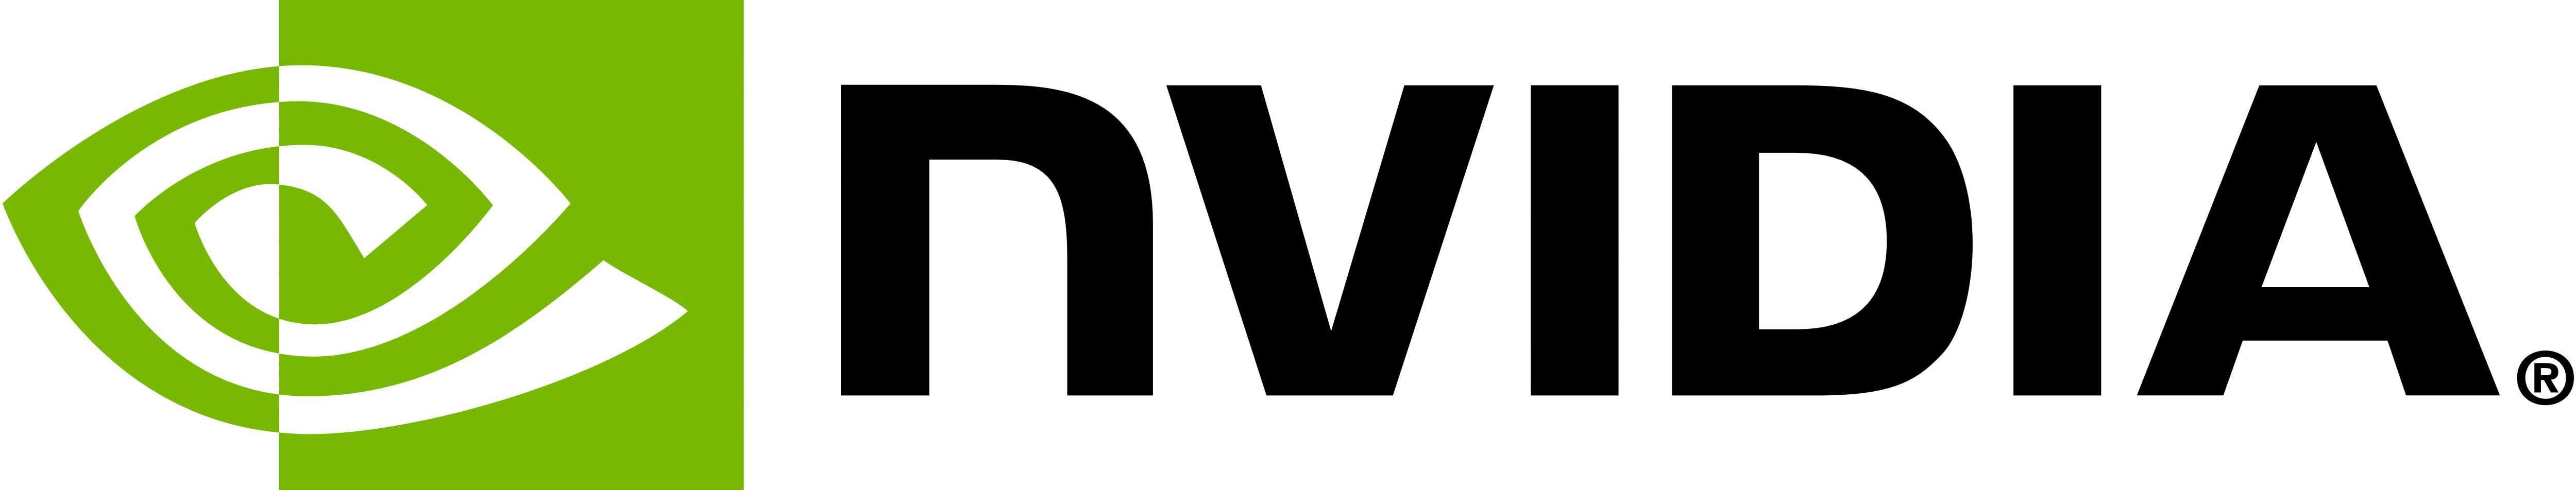 NVIDIA's logo